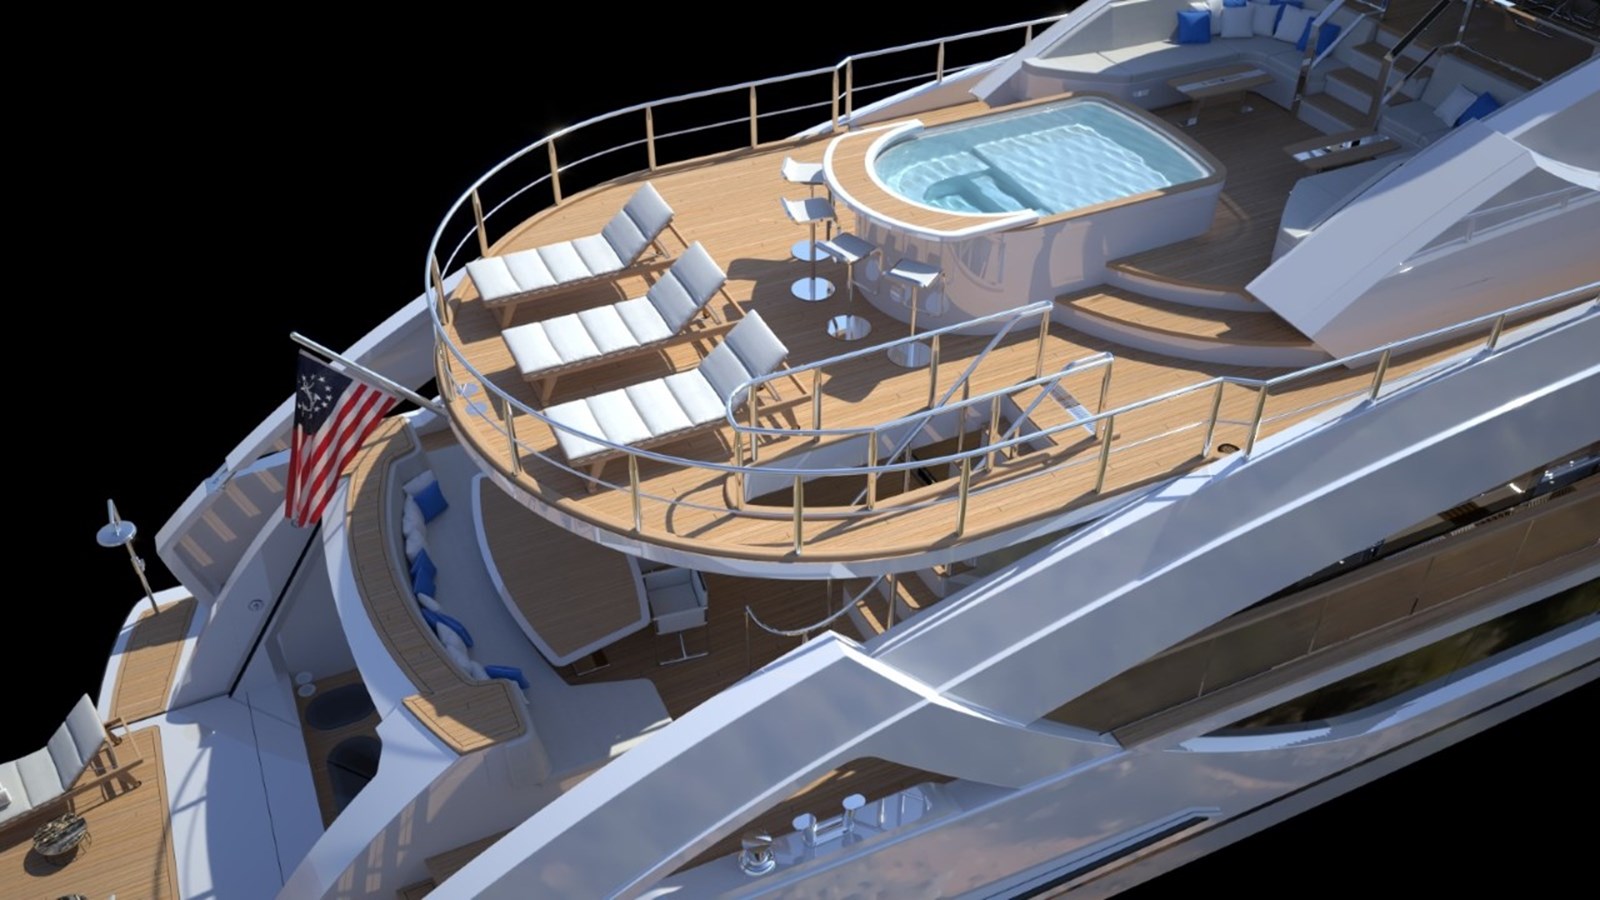 phoenix-135-new-build-yacht-for-sale-sundeck-hot-tub-yachtzoo